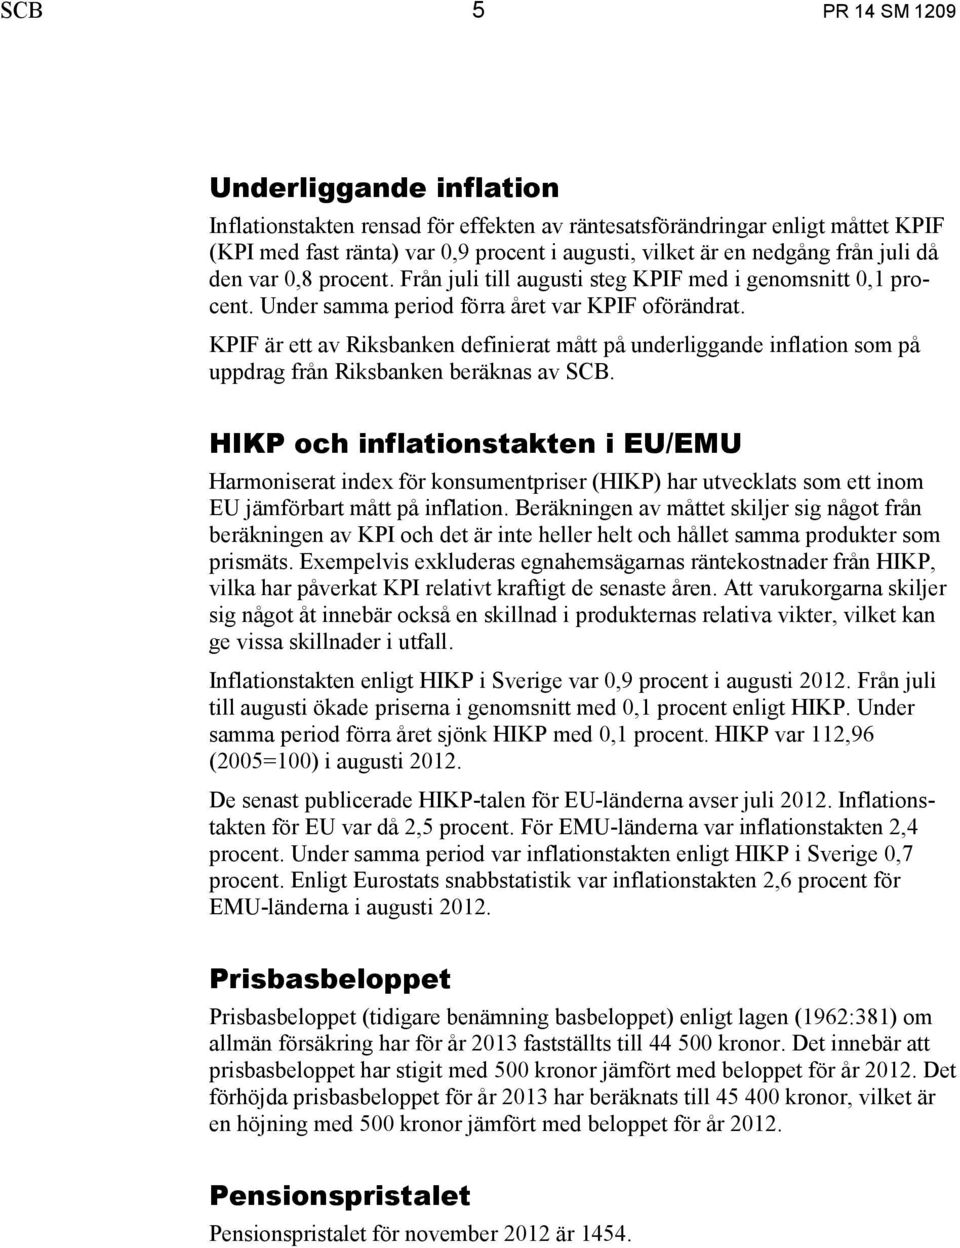 KPIF är ett av Riksbanken definierat mått på underliggande inflation som på uppdrag från Riksbanken beräknas av SCB.